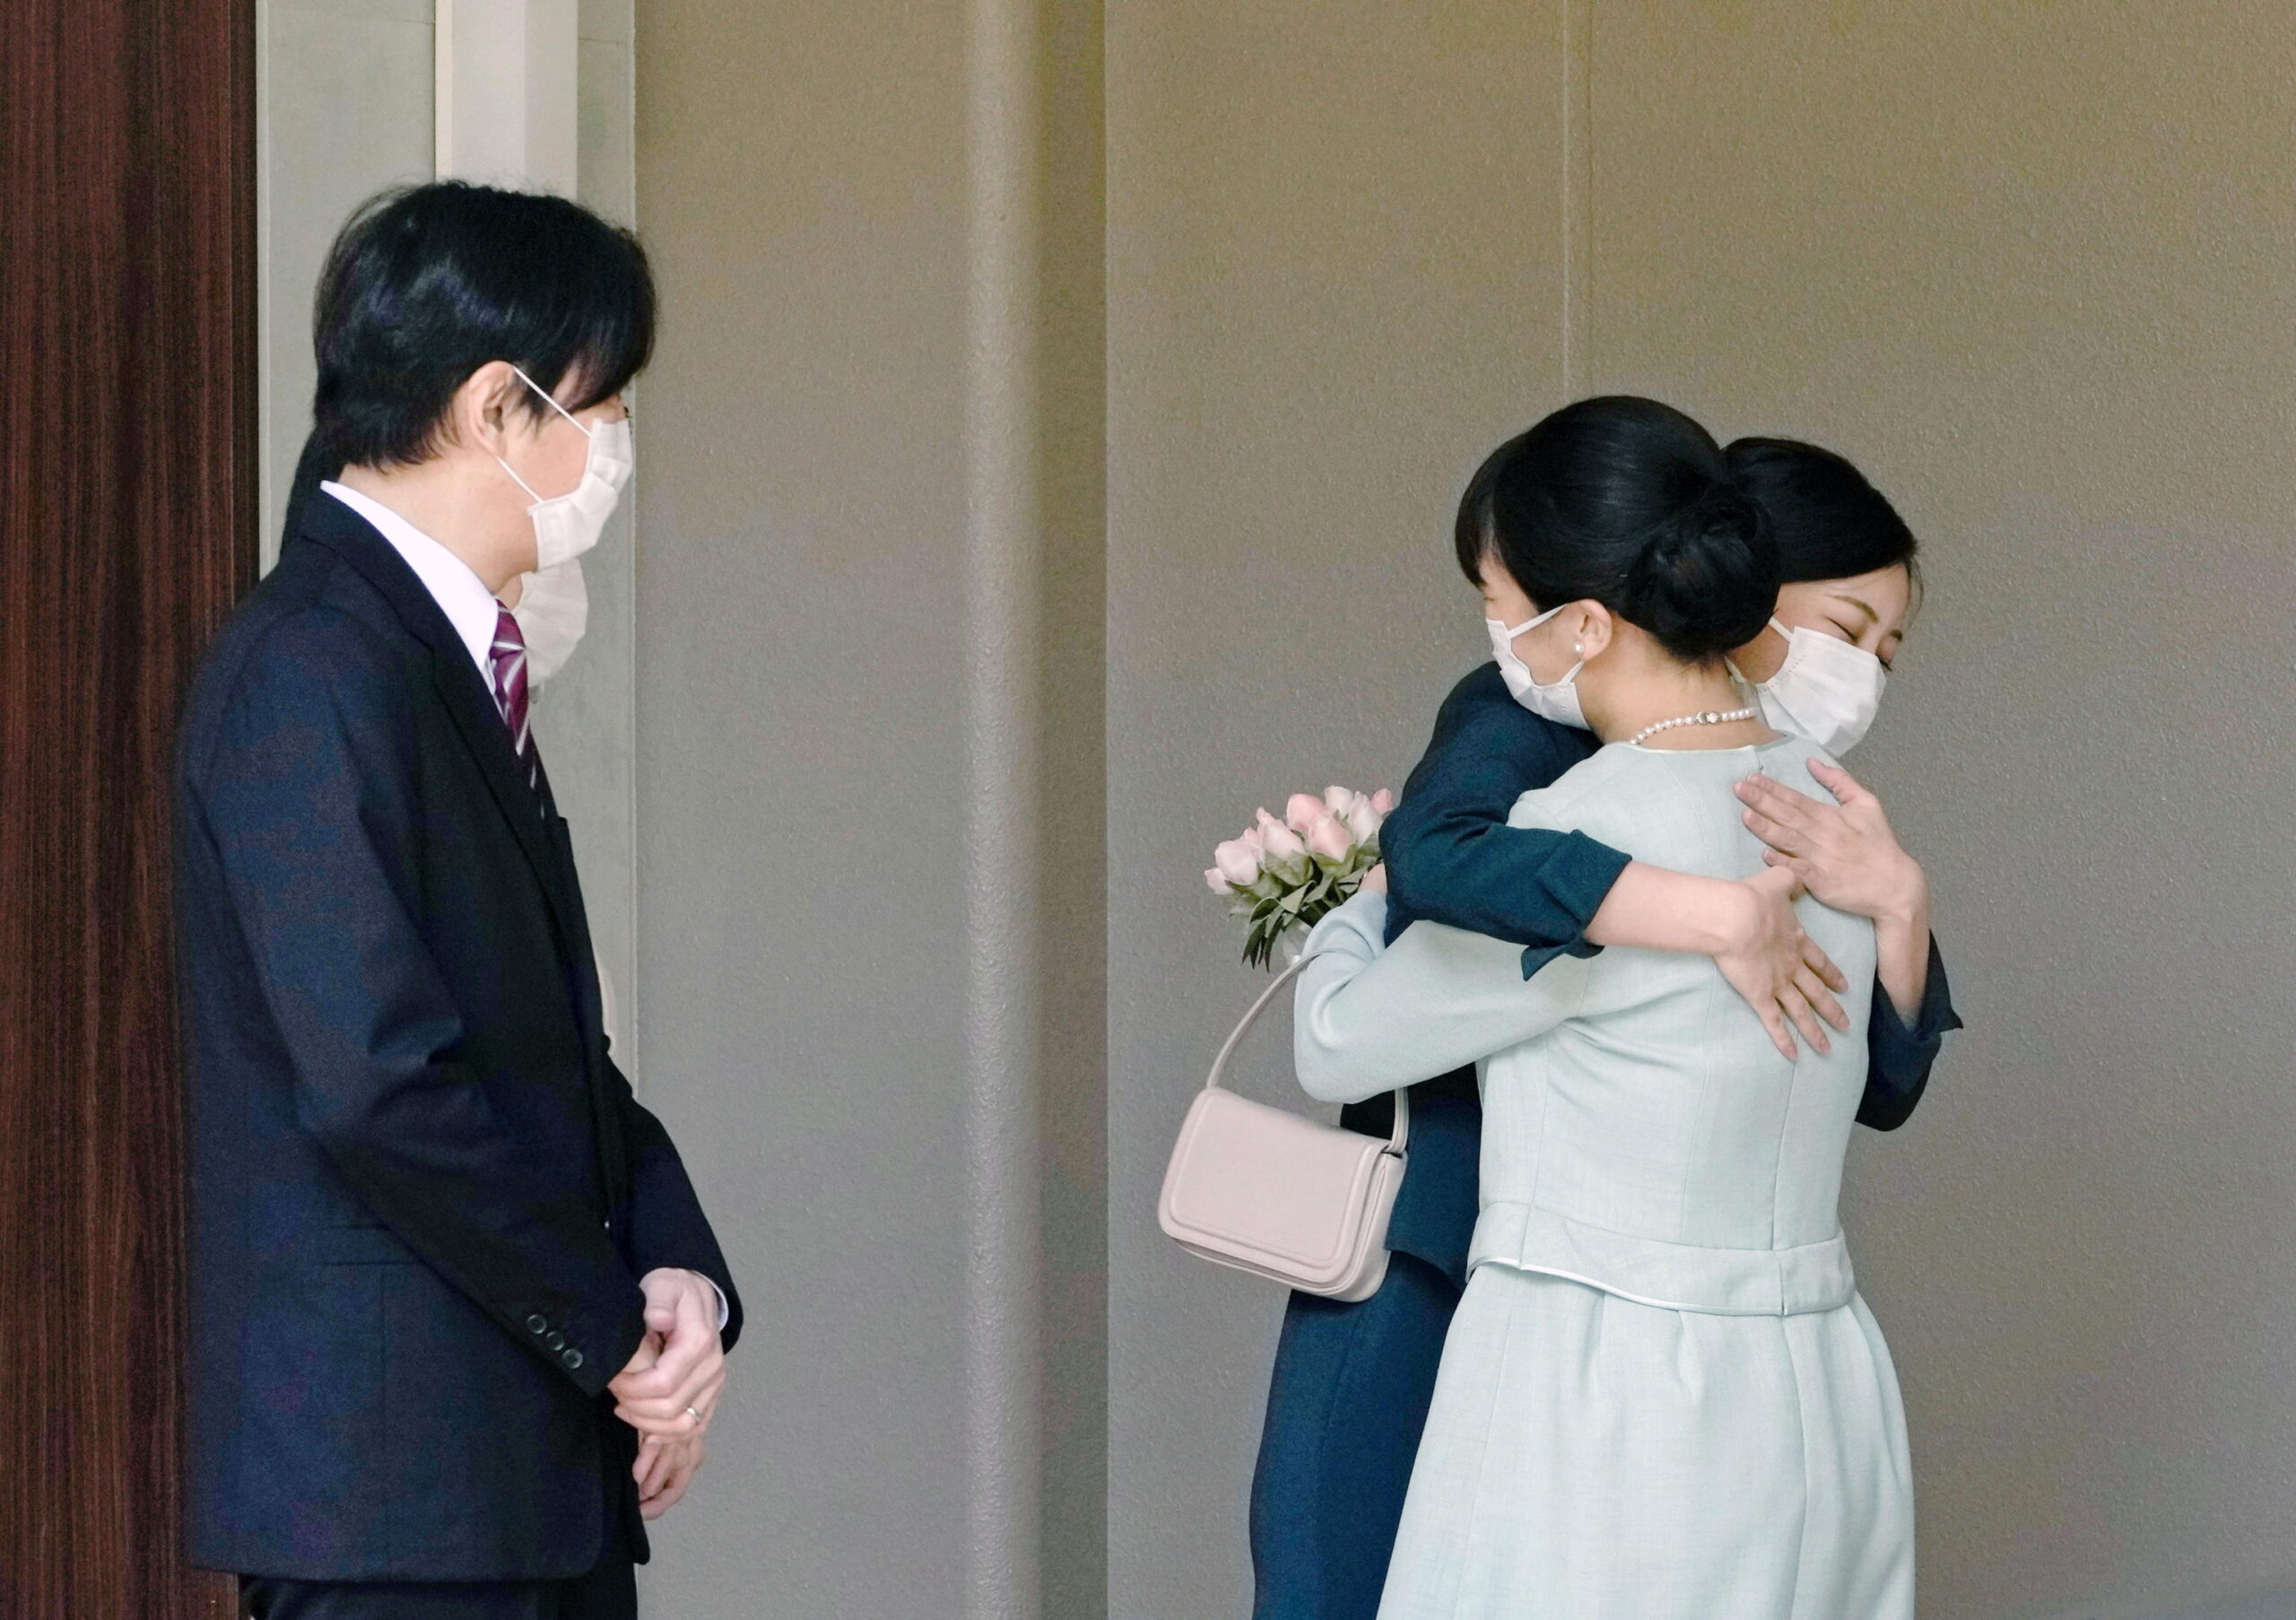 Giappone, la principessa Mako sposa il 'non nobile' Kei Komuro: cerimonia civile e sottotono FOTO